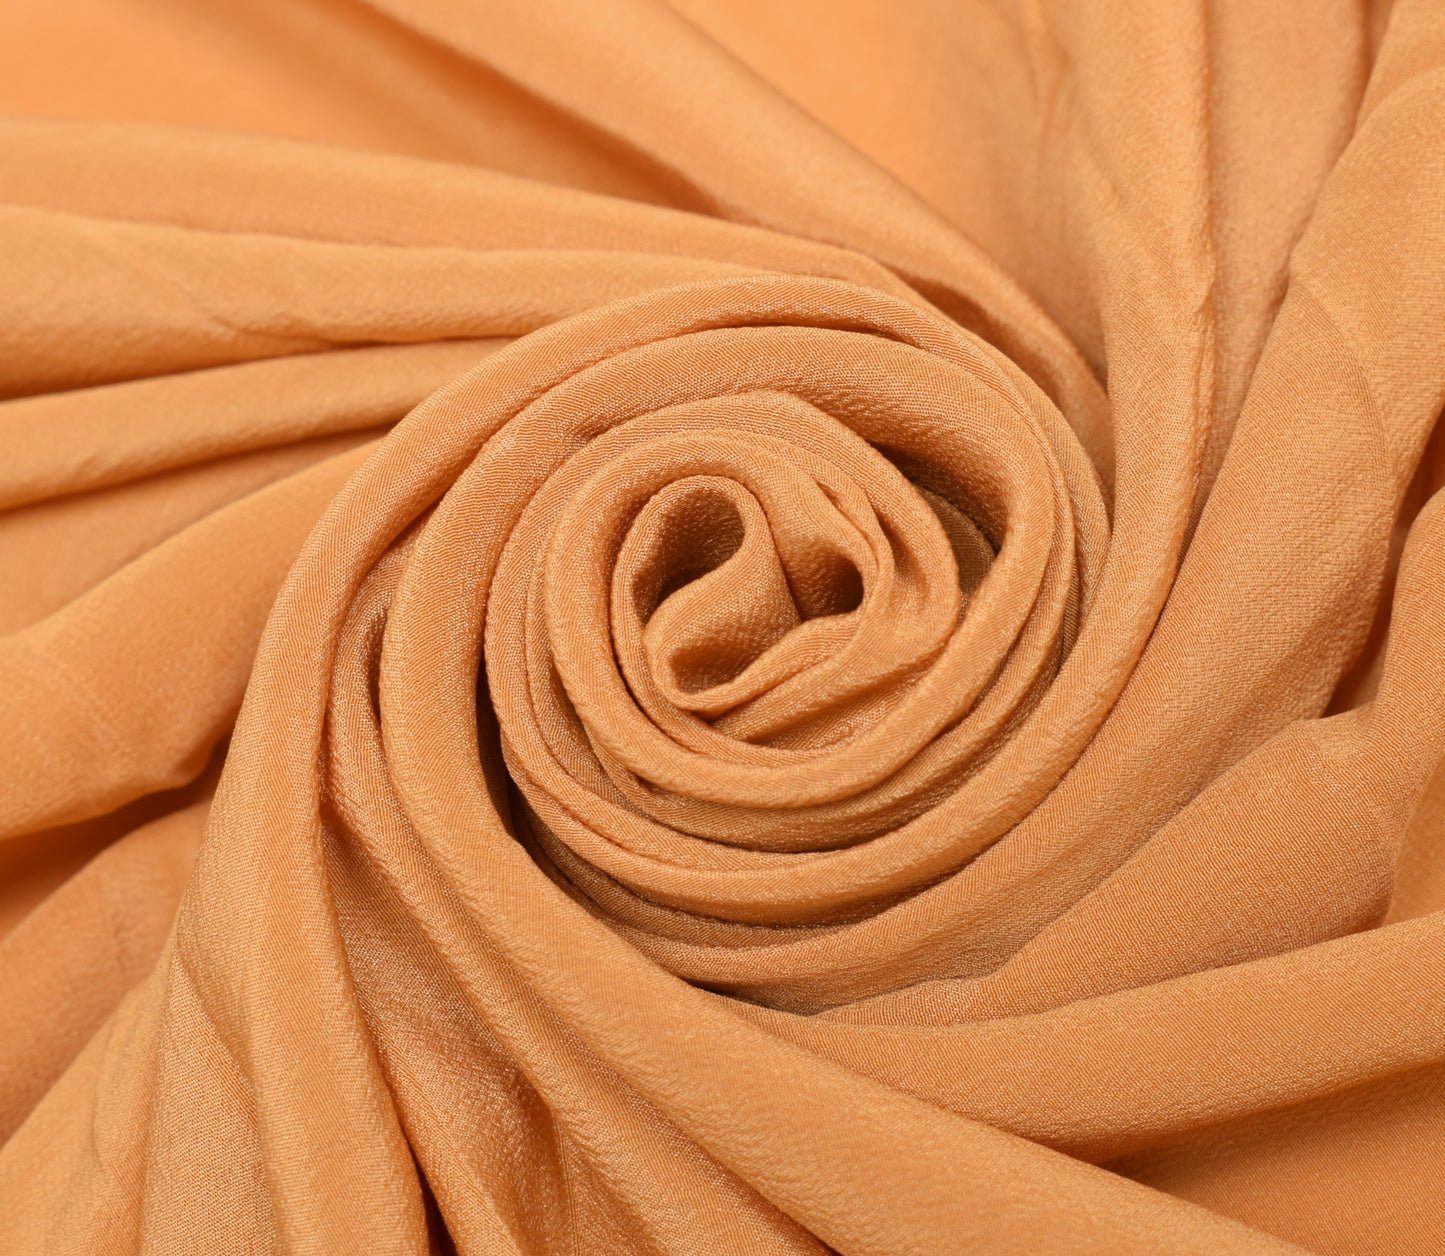 Sushila Vintage 100% Pure Crepe Sari Remnant Scrap Multi Purpose Craft Fabric